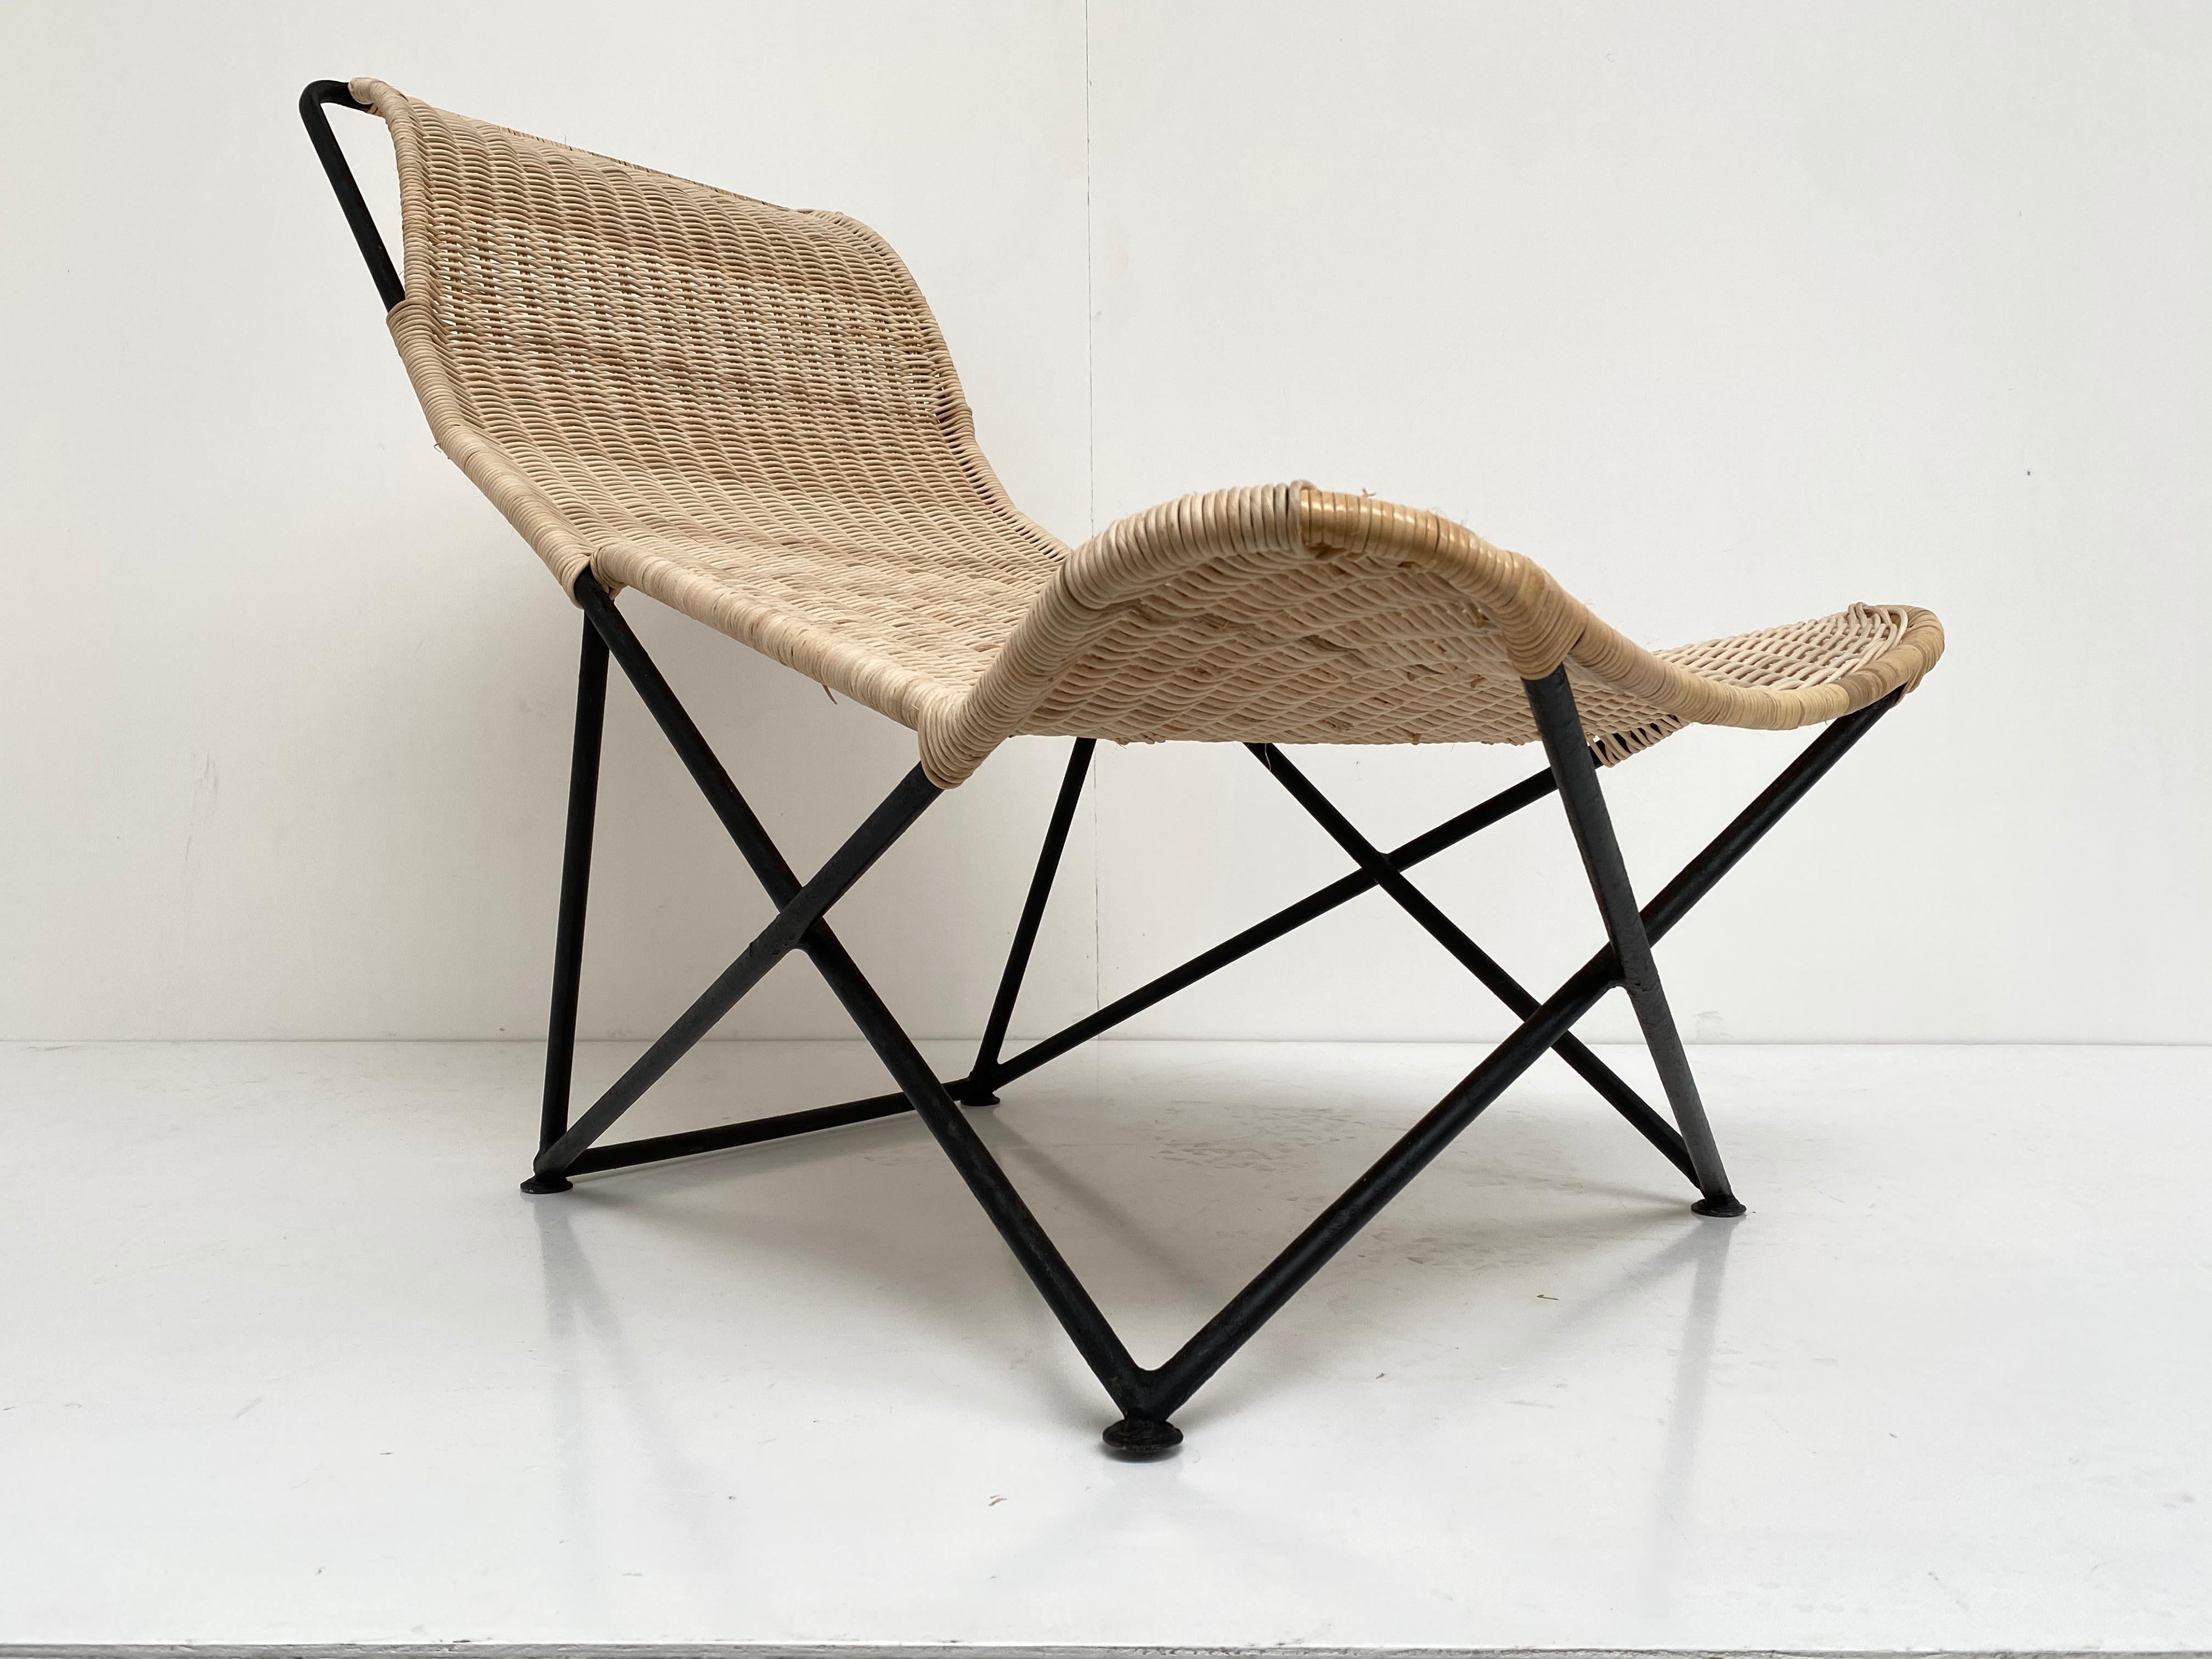 Superbe chaise en osier de forme sculpturale des années 1950. Cette chaise présente la merveilleuse juxtaposition d'un élément en osier organique fluide de forme libre monté sur un cadre en acier émaillé triangulaire minimaliste ajoutant à la